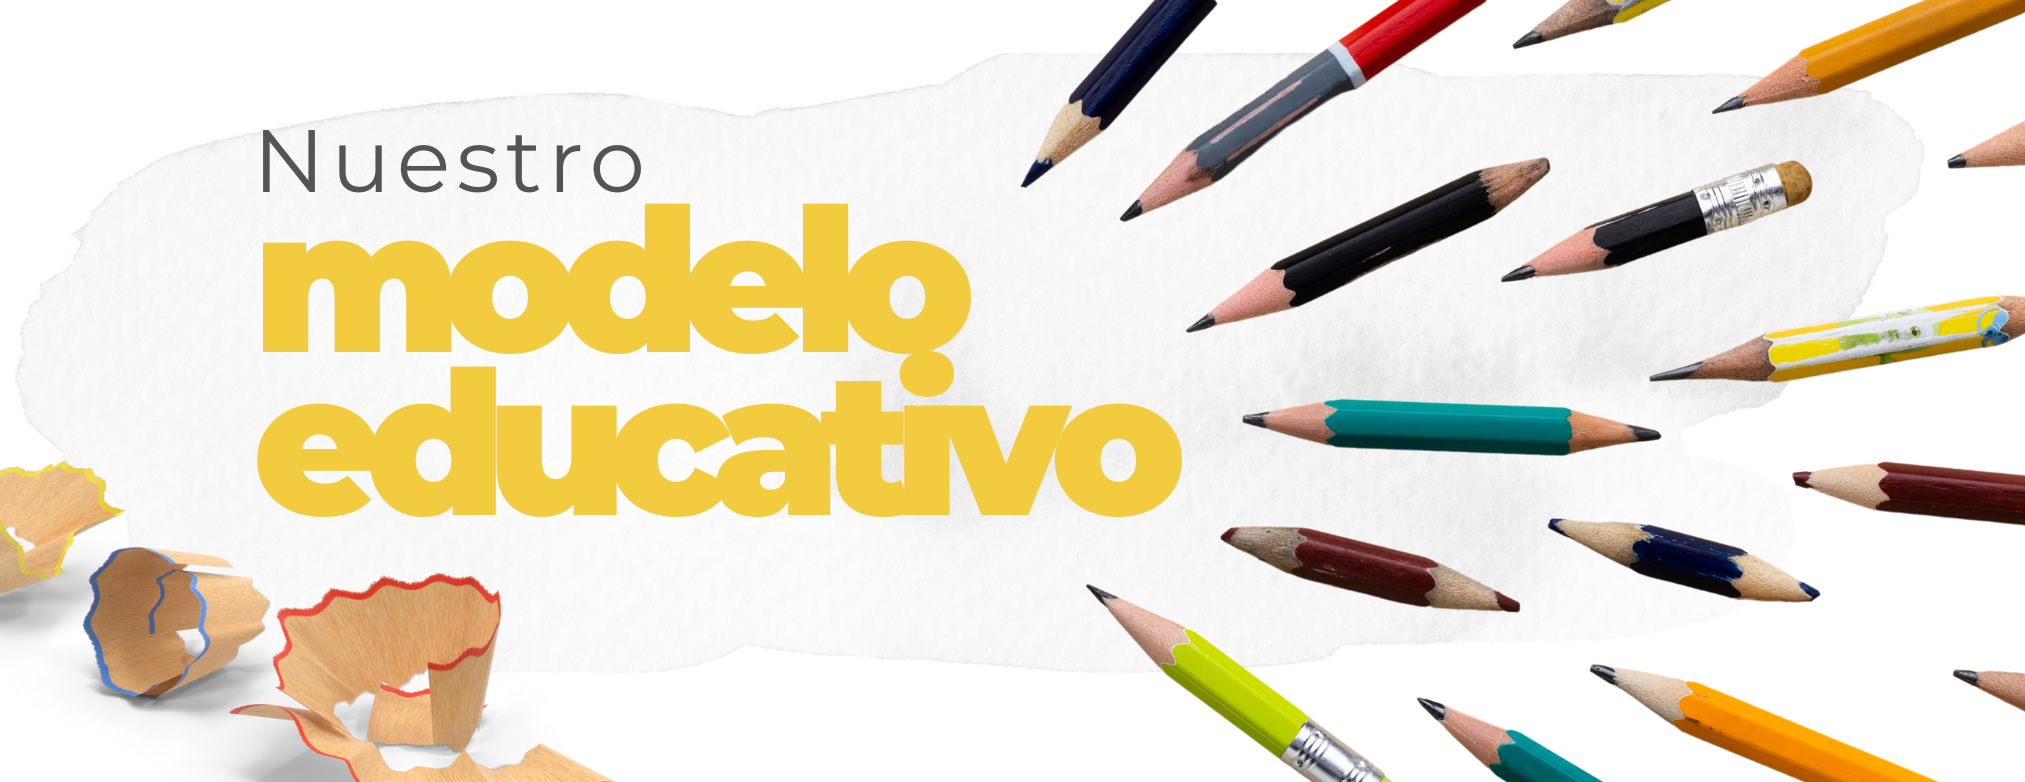 Imagen de portada de sección "Nuestro Modelo Educativo" - Se visualizan lápices de colores